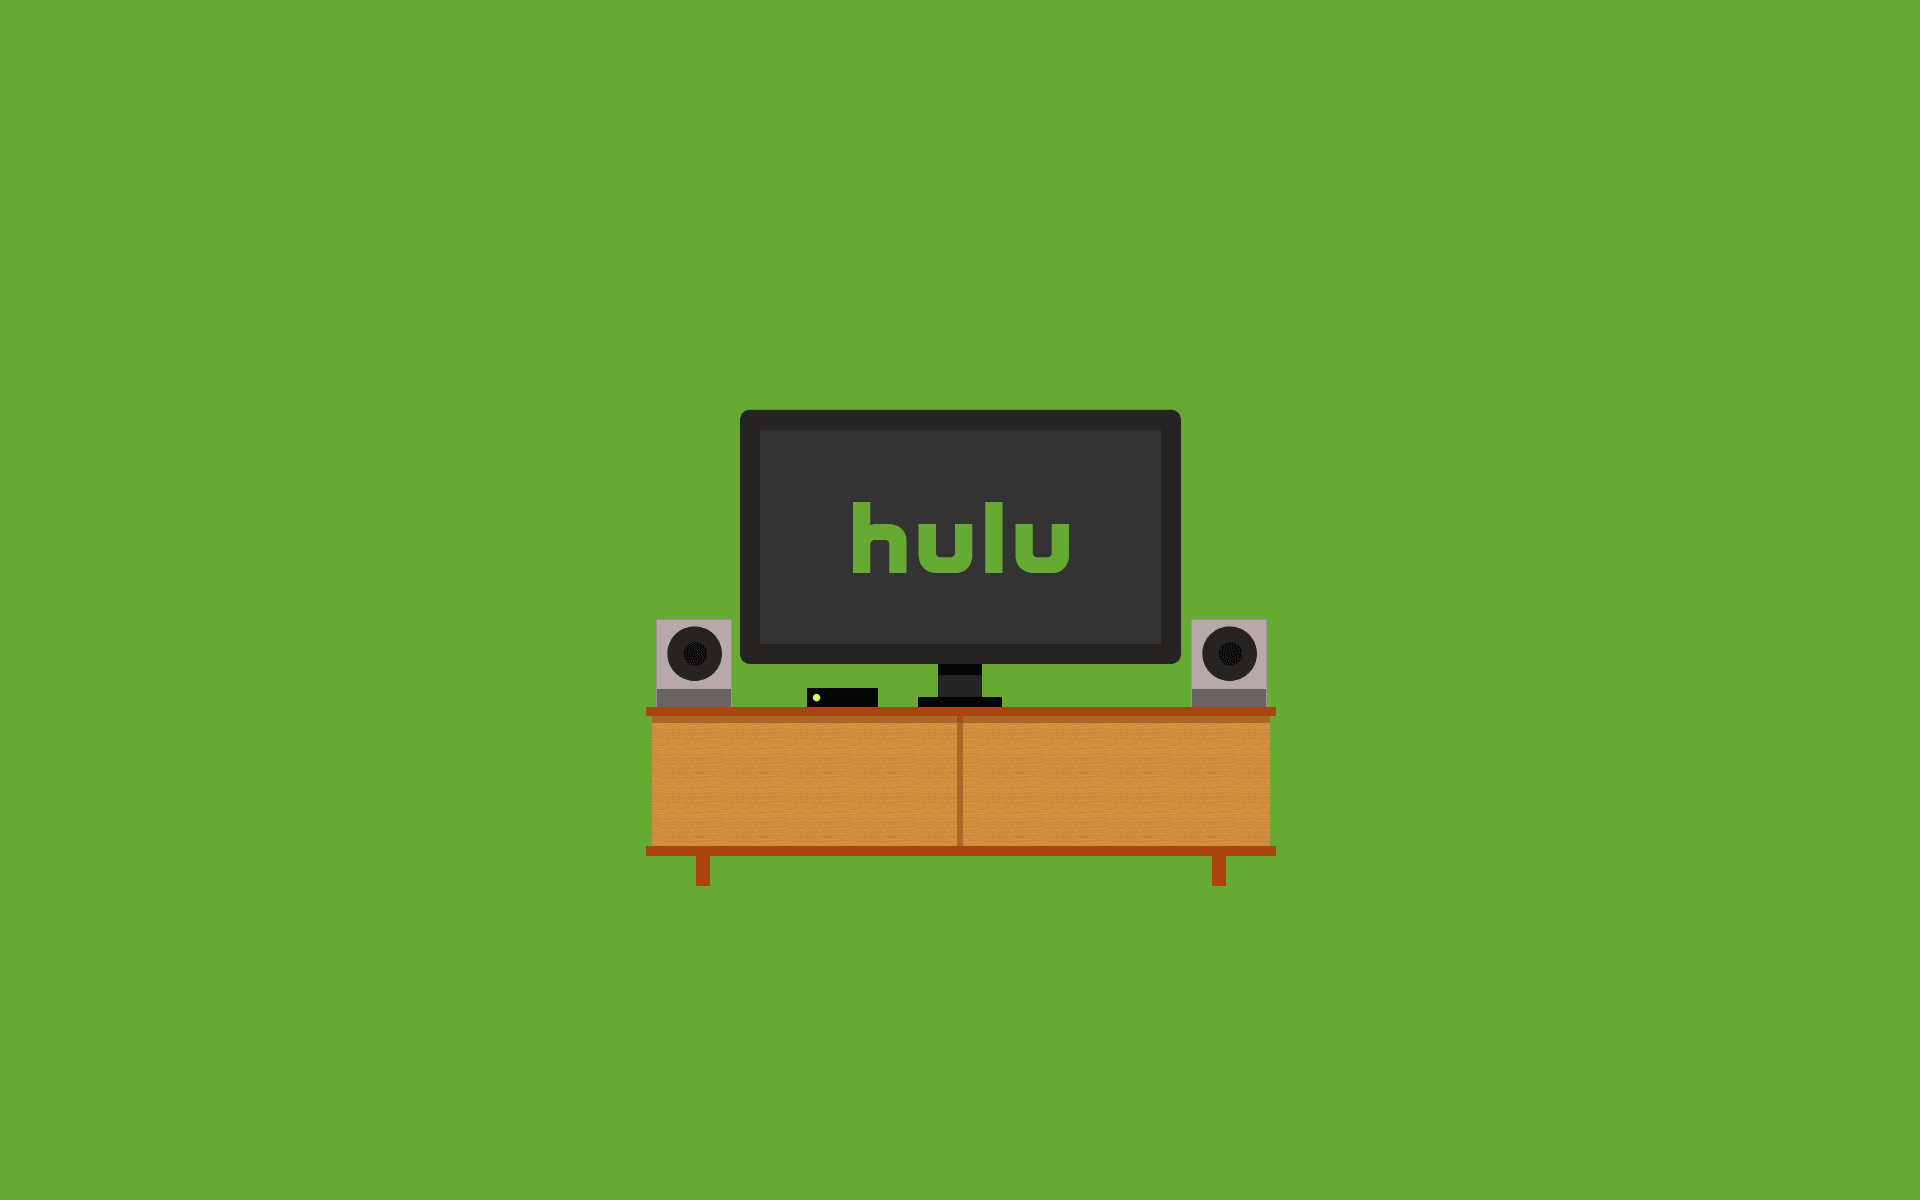 Huluのおすすめ作品や月額プランなどのまとめ